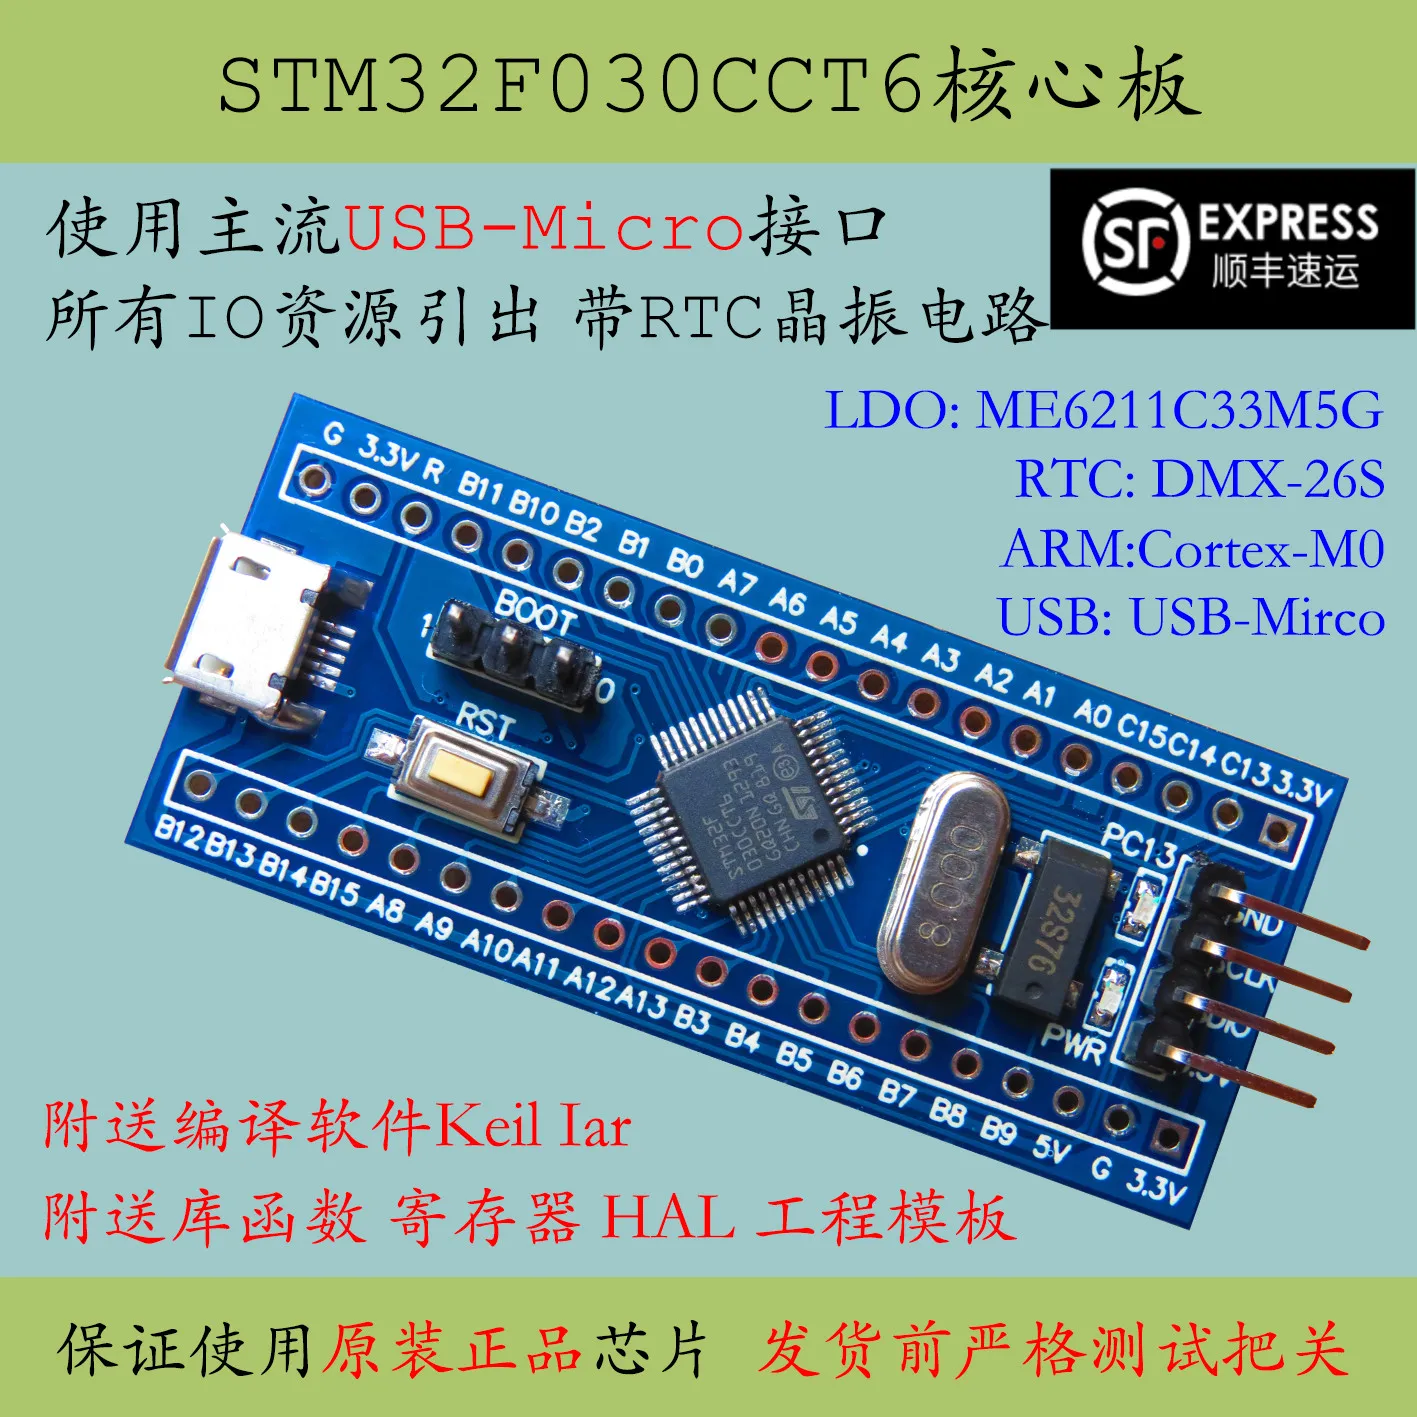 Основная пластина STM32F030CCT6 массовый продукт одночиповый микрокомпьютер STM32F030